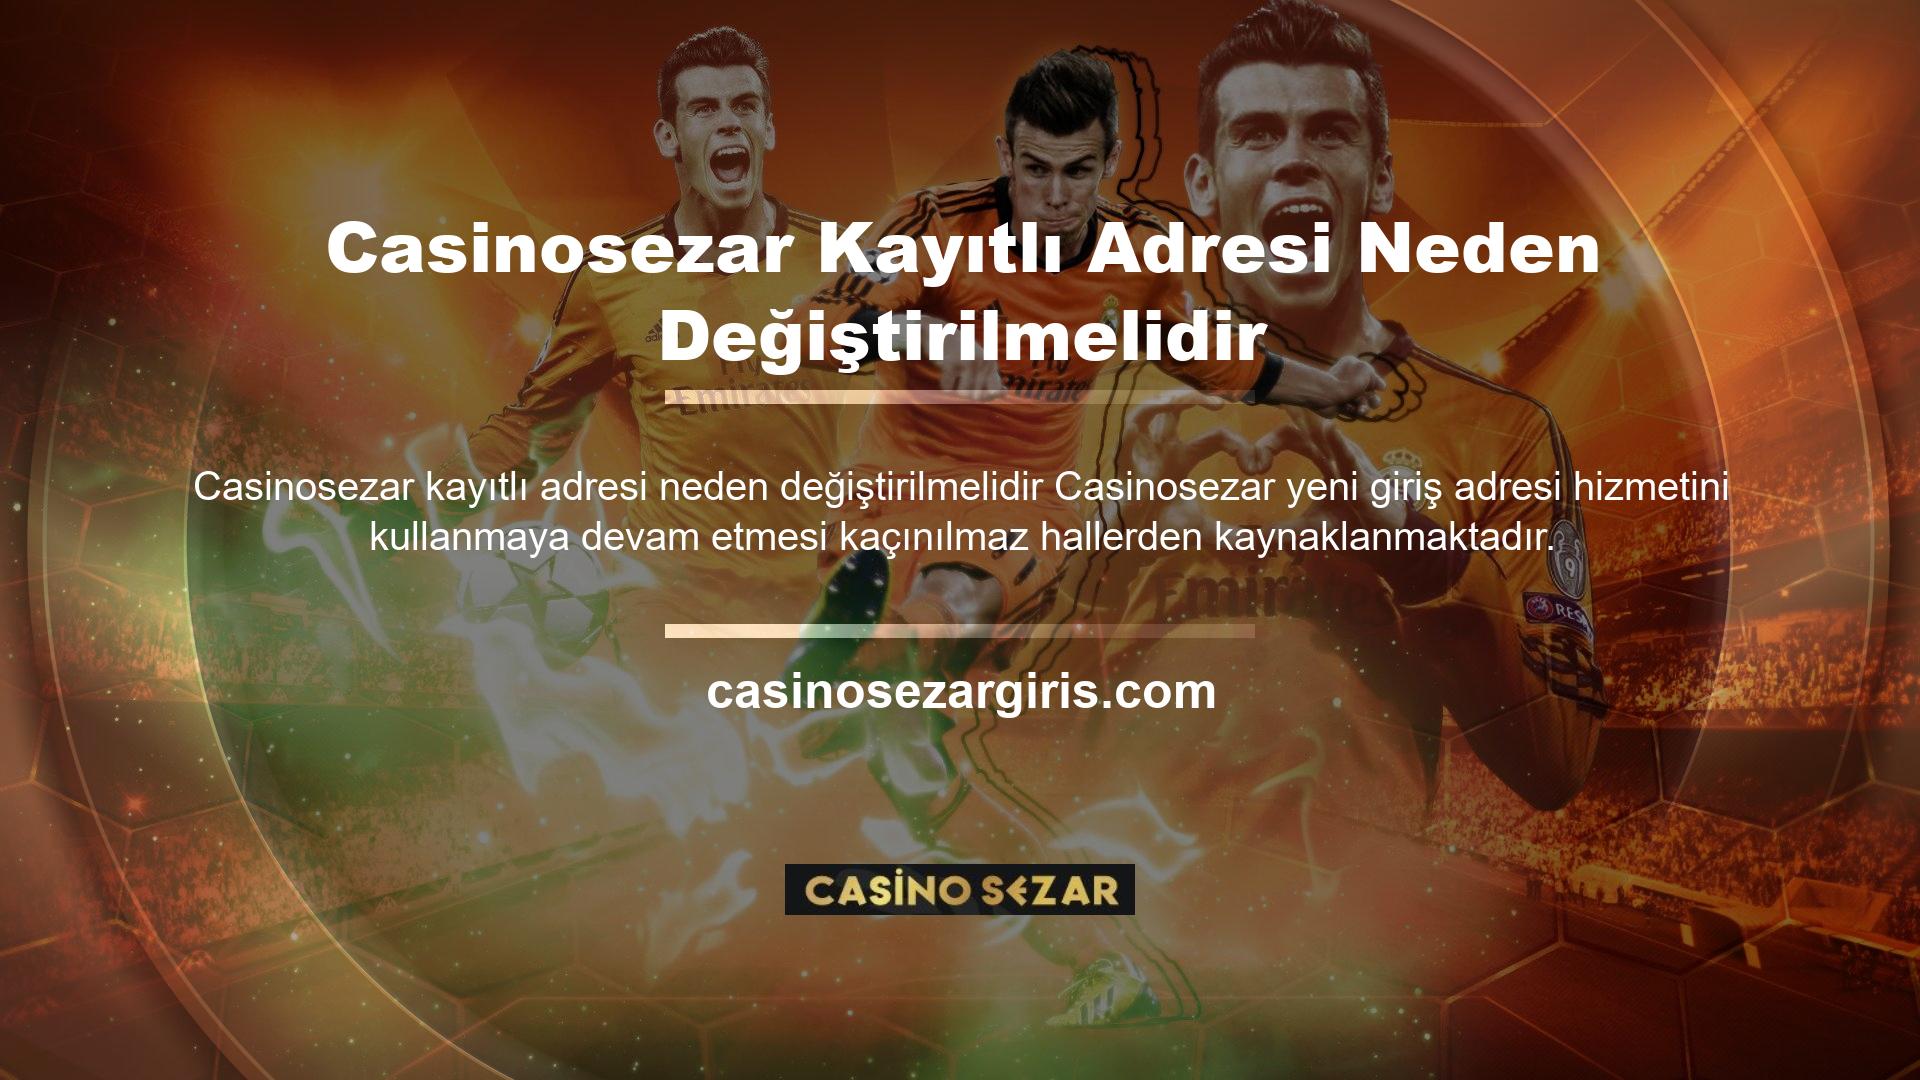 Ülkemizde maalesef online casino sitelerinin kullanım ve hizmetlerine yönelik lisanslar şu anda bulunmamaktadır